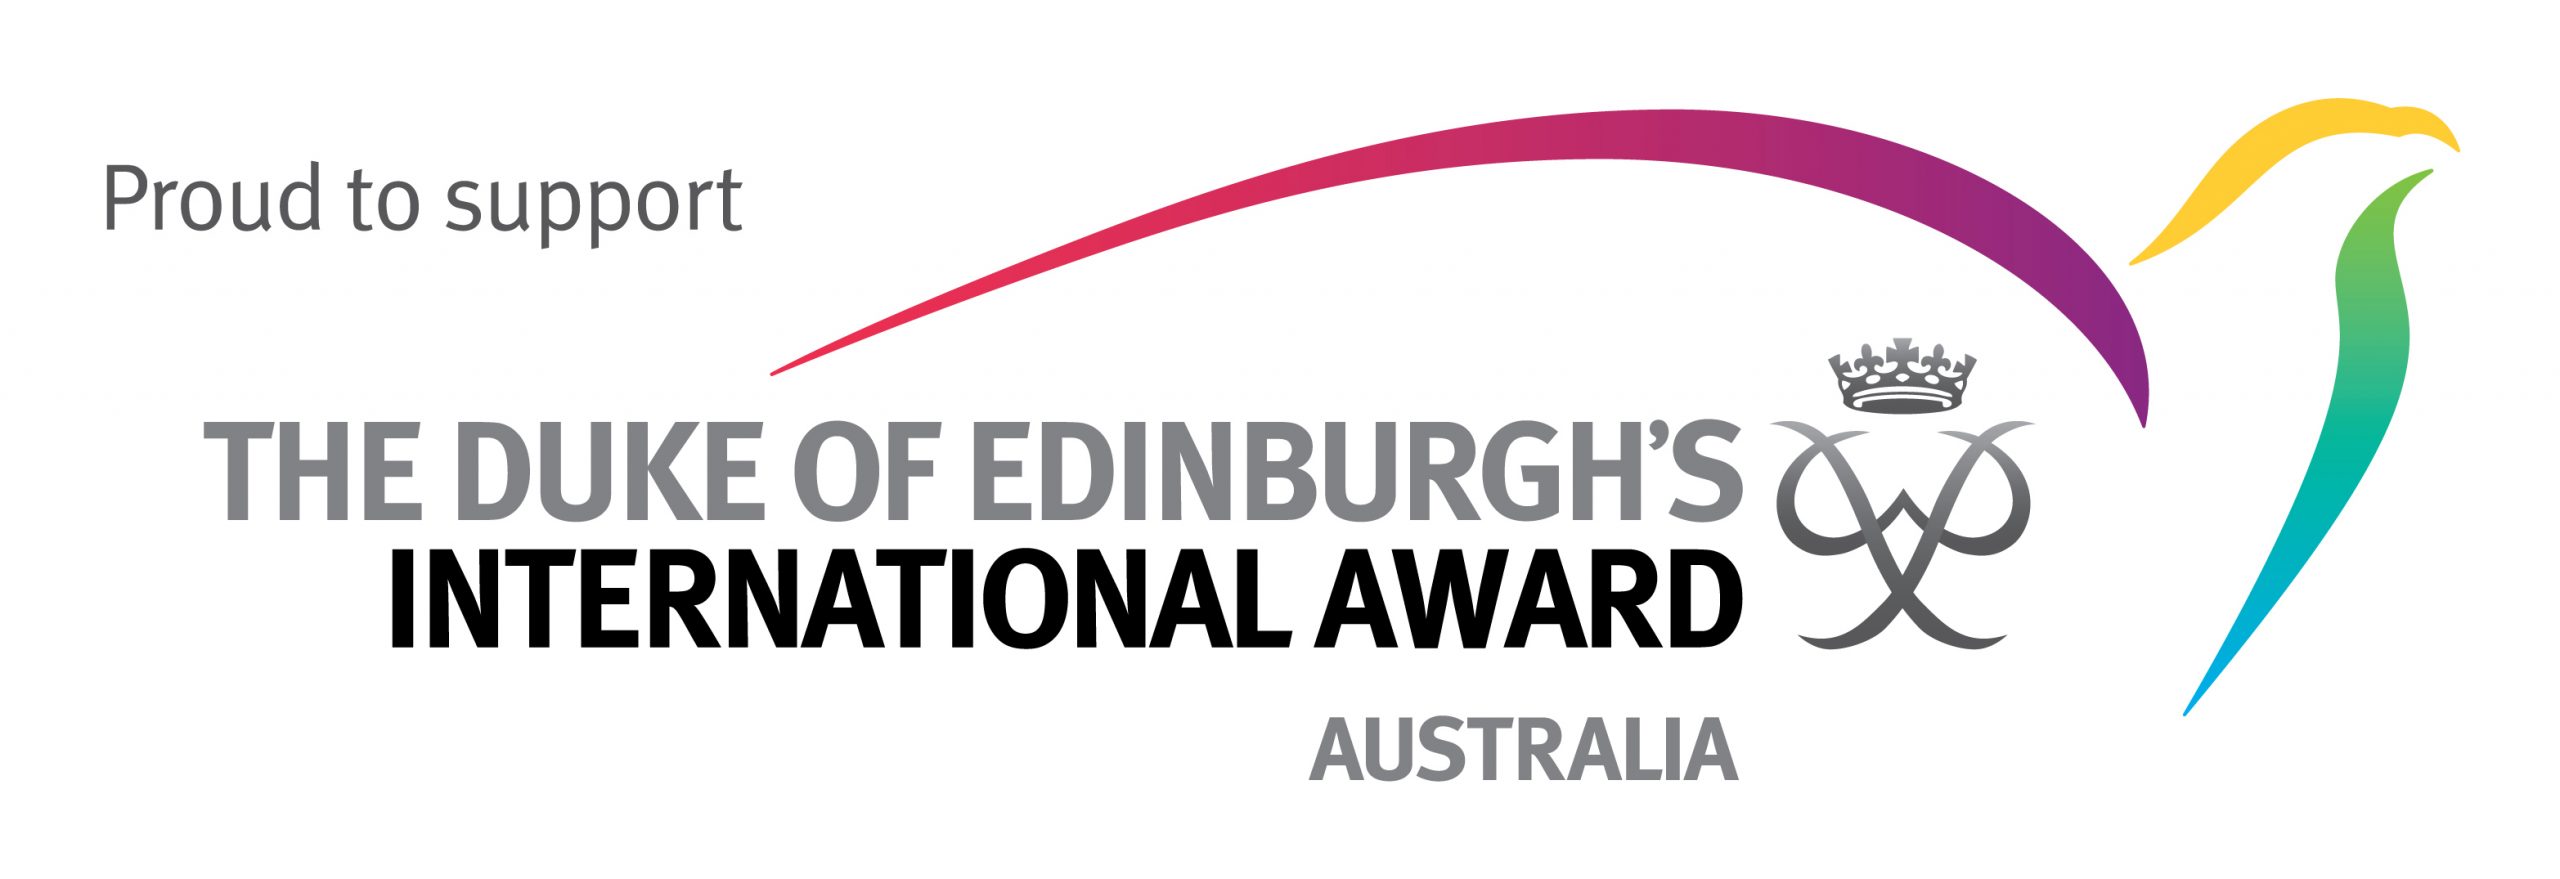 The Duke of Edinburgh's International Award - Australia